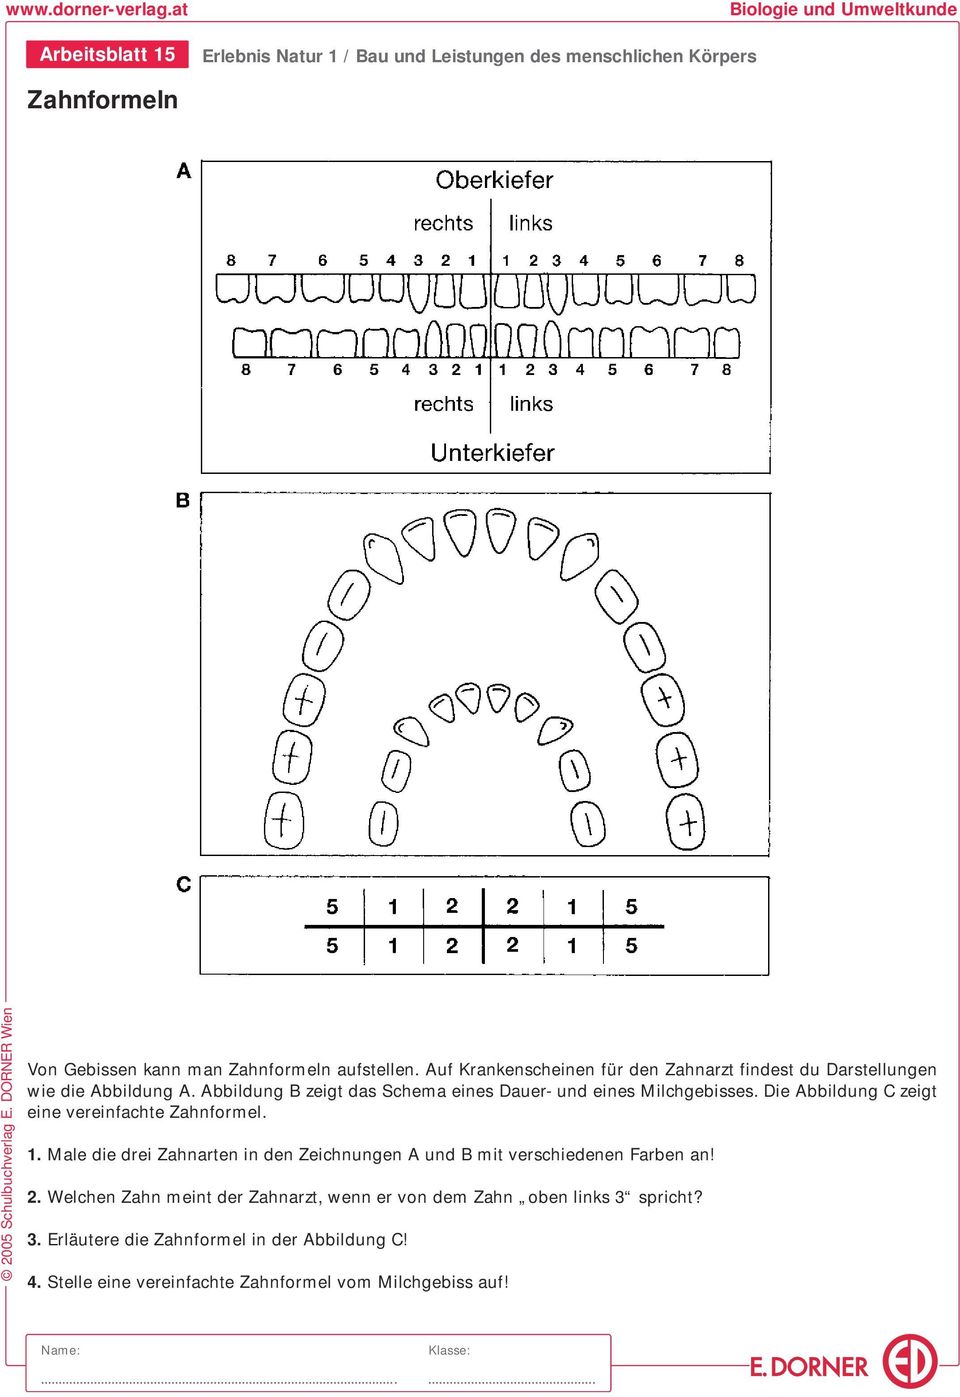 Abbildung B zeigt das Schema eines Dauer- und eines Milchgebisses. Die Abbildung C zeigt eine vereinfachte Zahnformel.